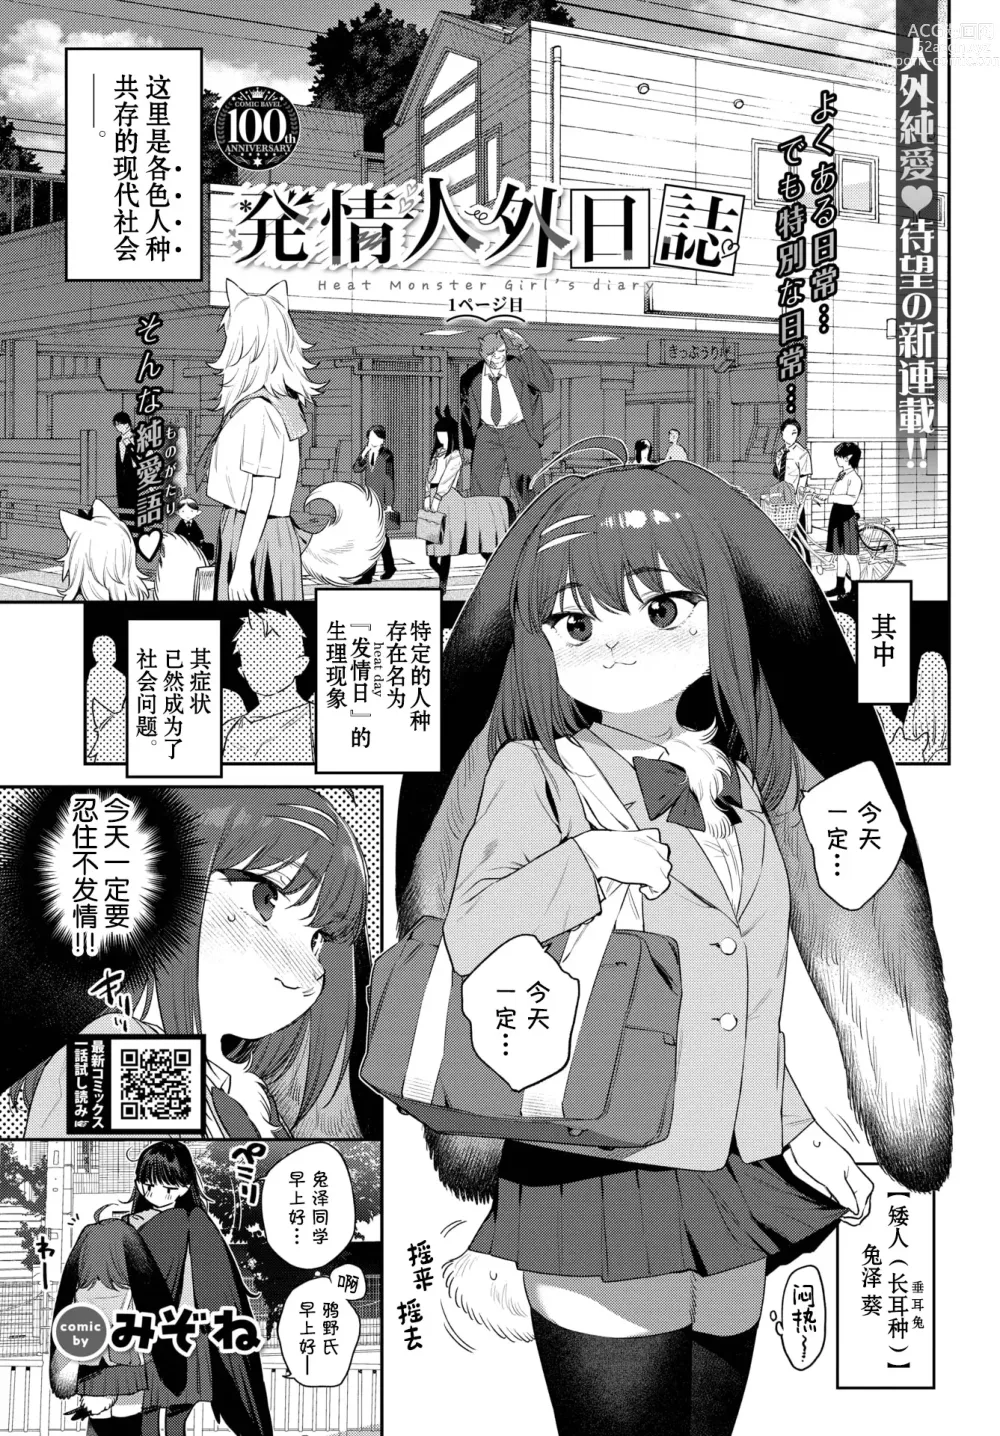 Page 2 of manga Hatsujou Jingai Nisshi - Heat Monster Girls diary Page 1